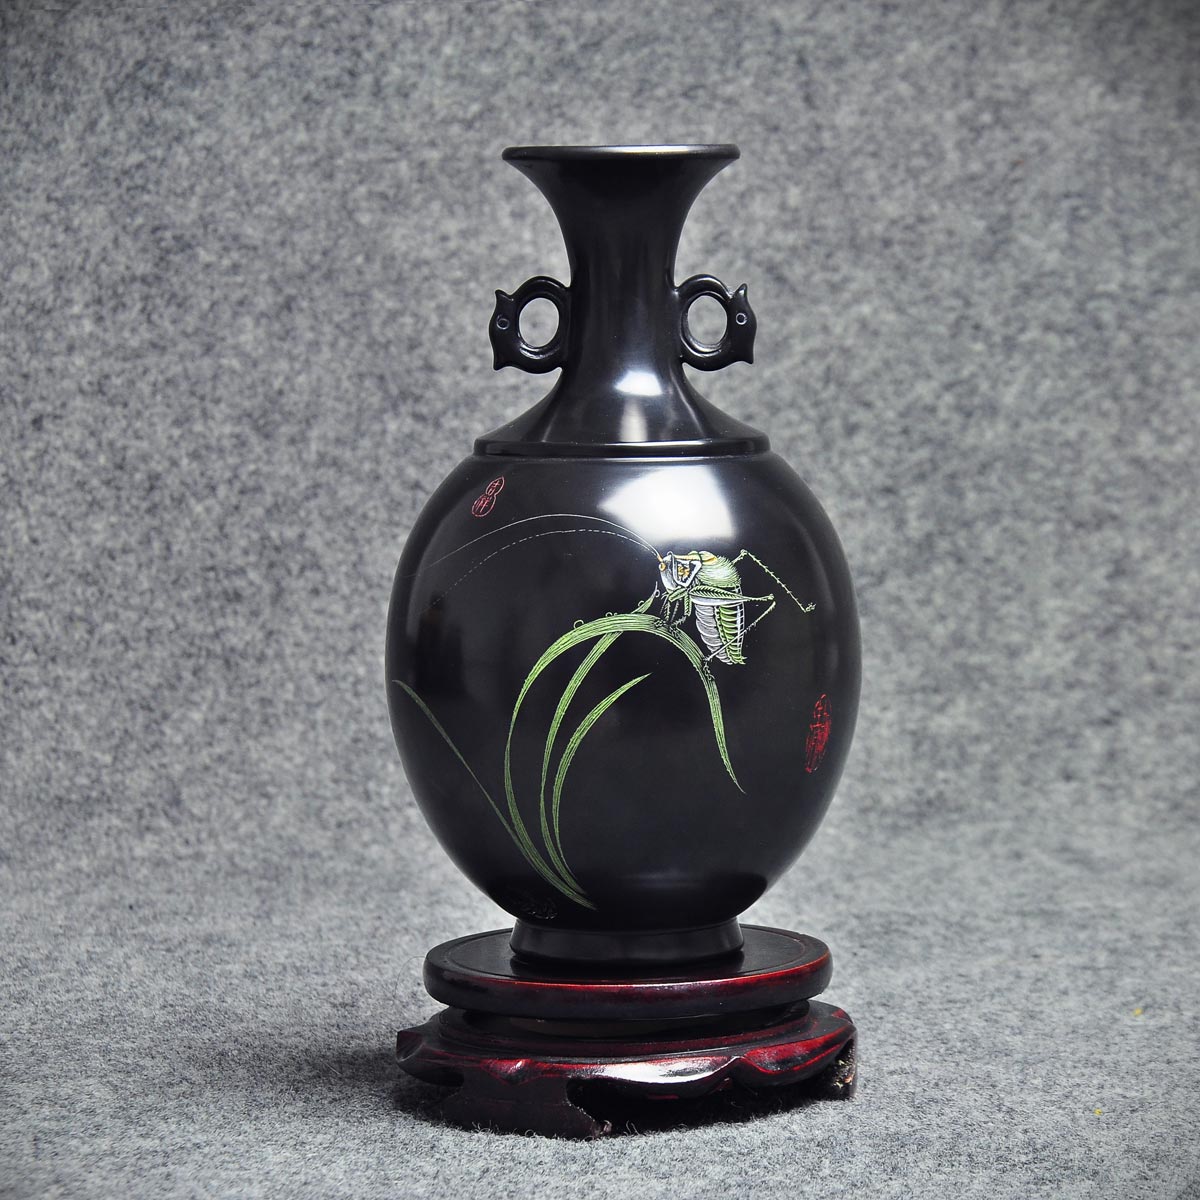 文物故事 | 探访良渚博物院①·黑陶刻符陶罐：5000年前的良渚人想说什么？